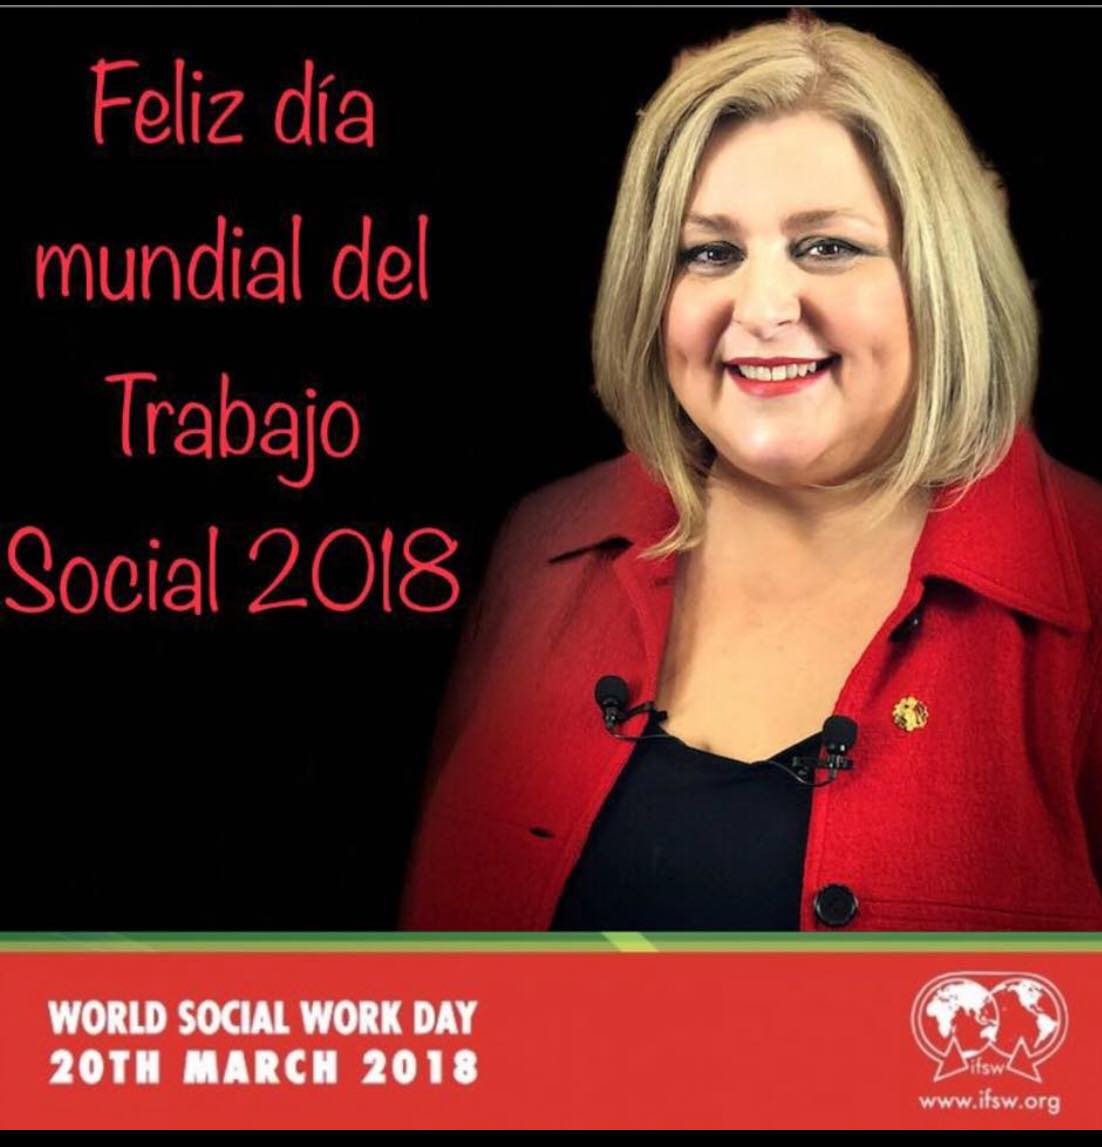 Mensaje para el Día Mundial del Trabajo Social 2018